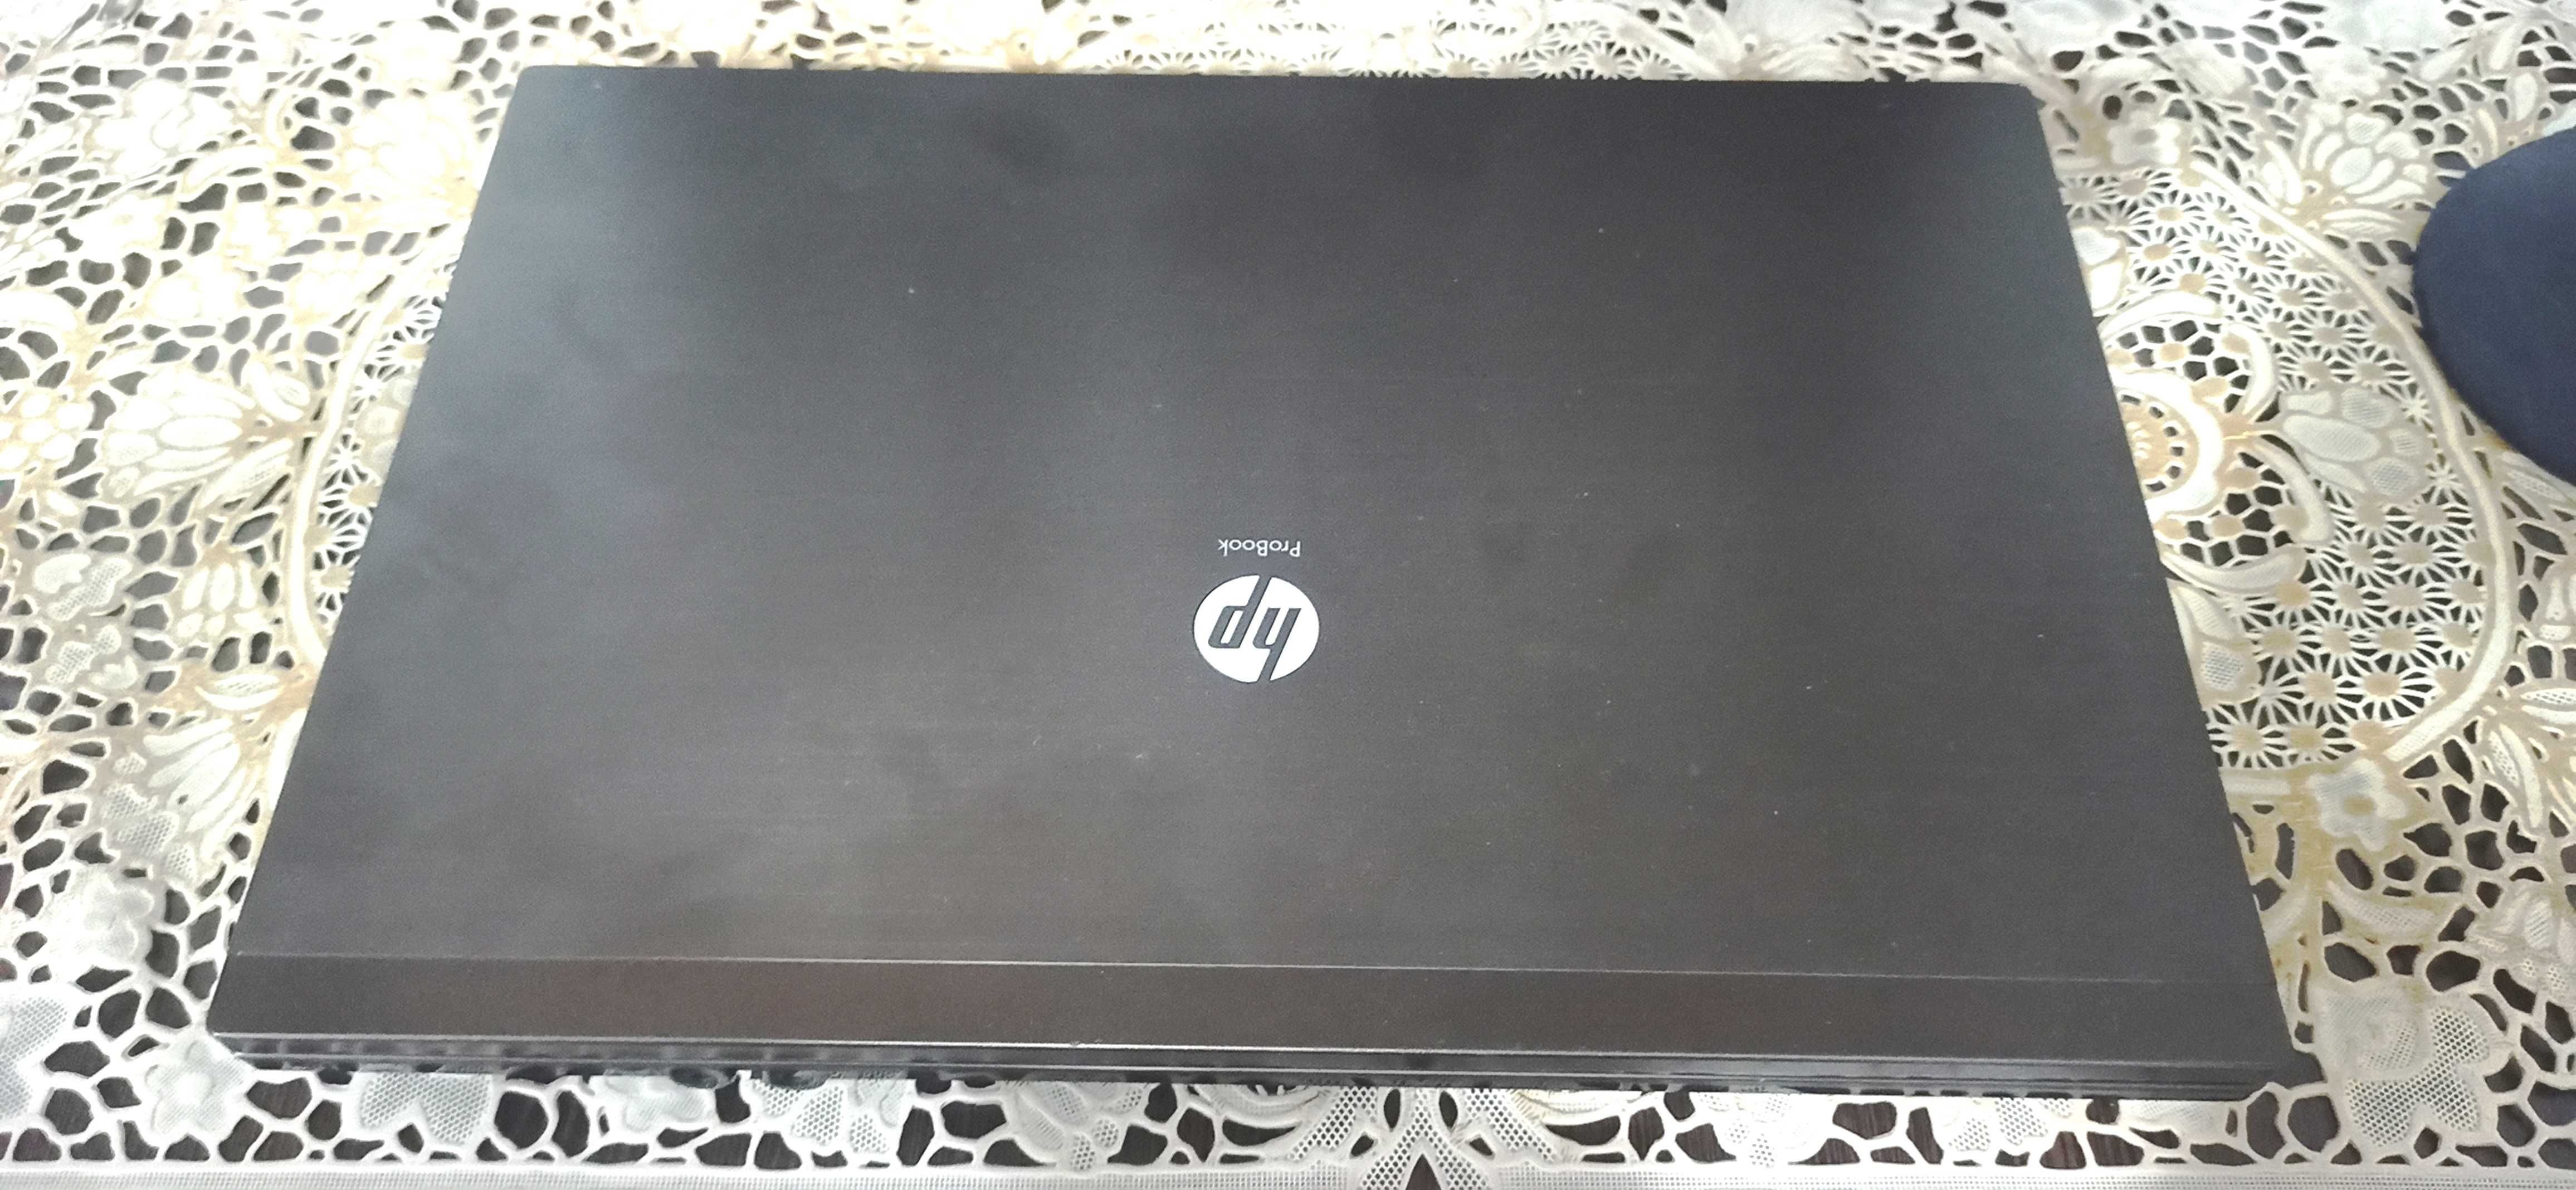 Продам Hp Probook Core i5 (4520S)